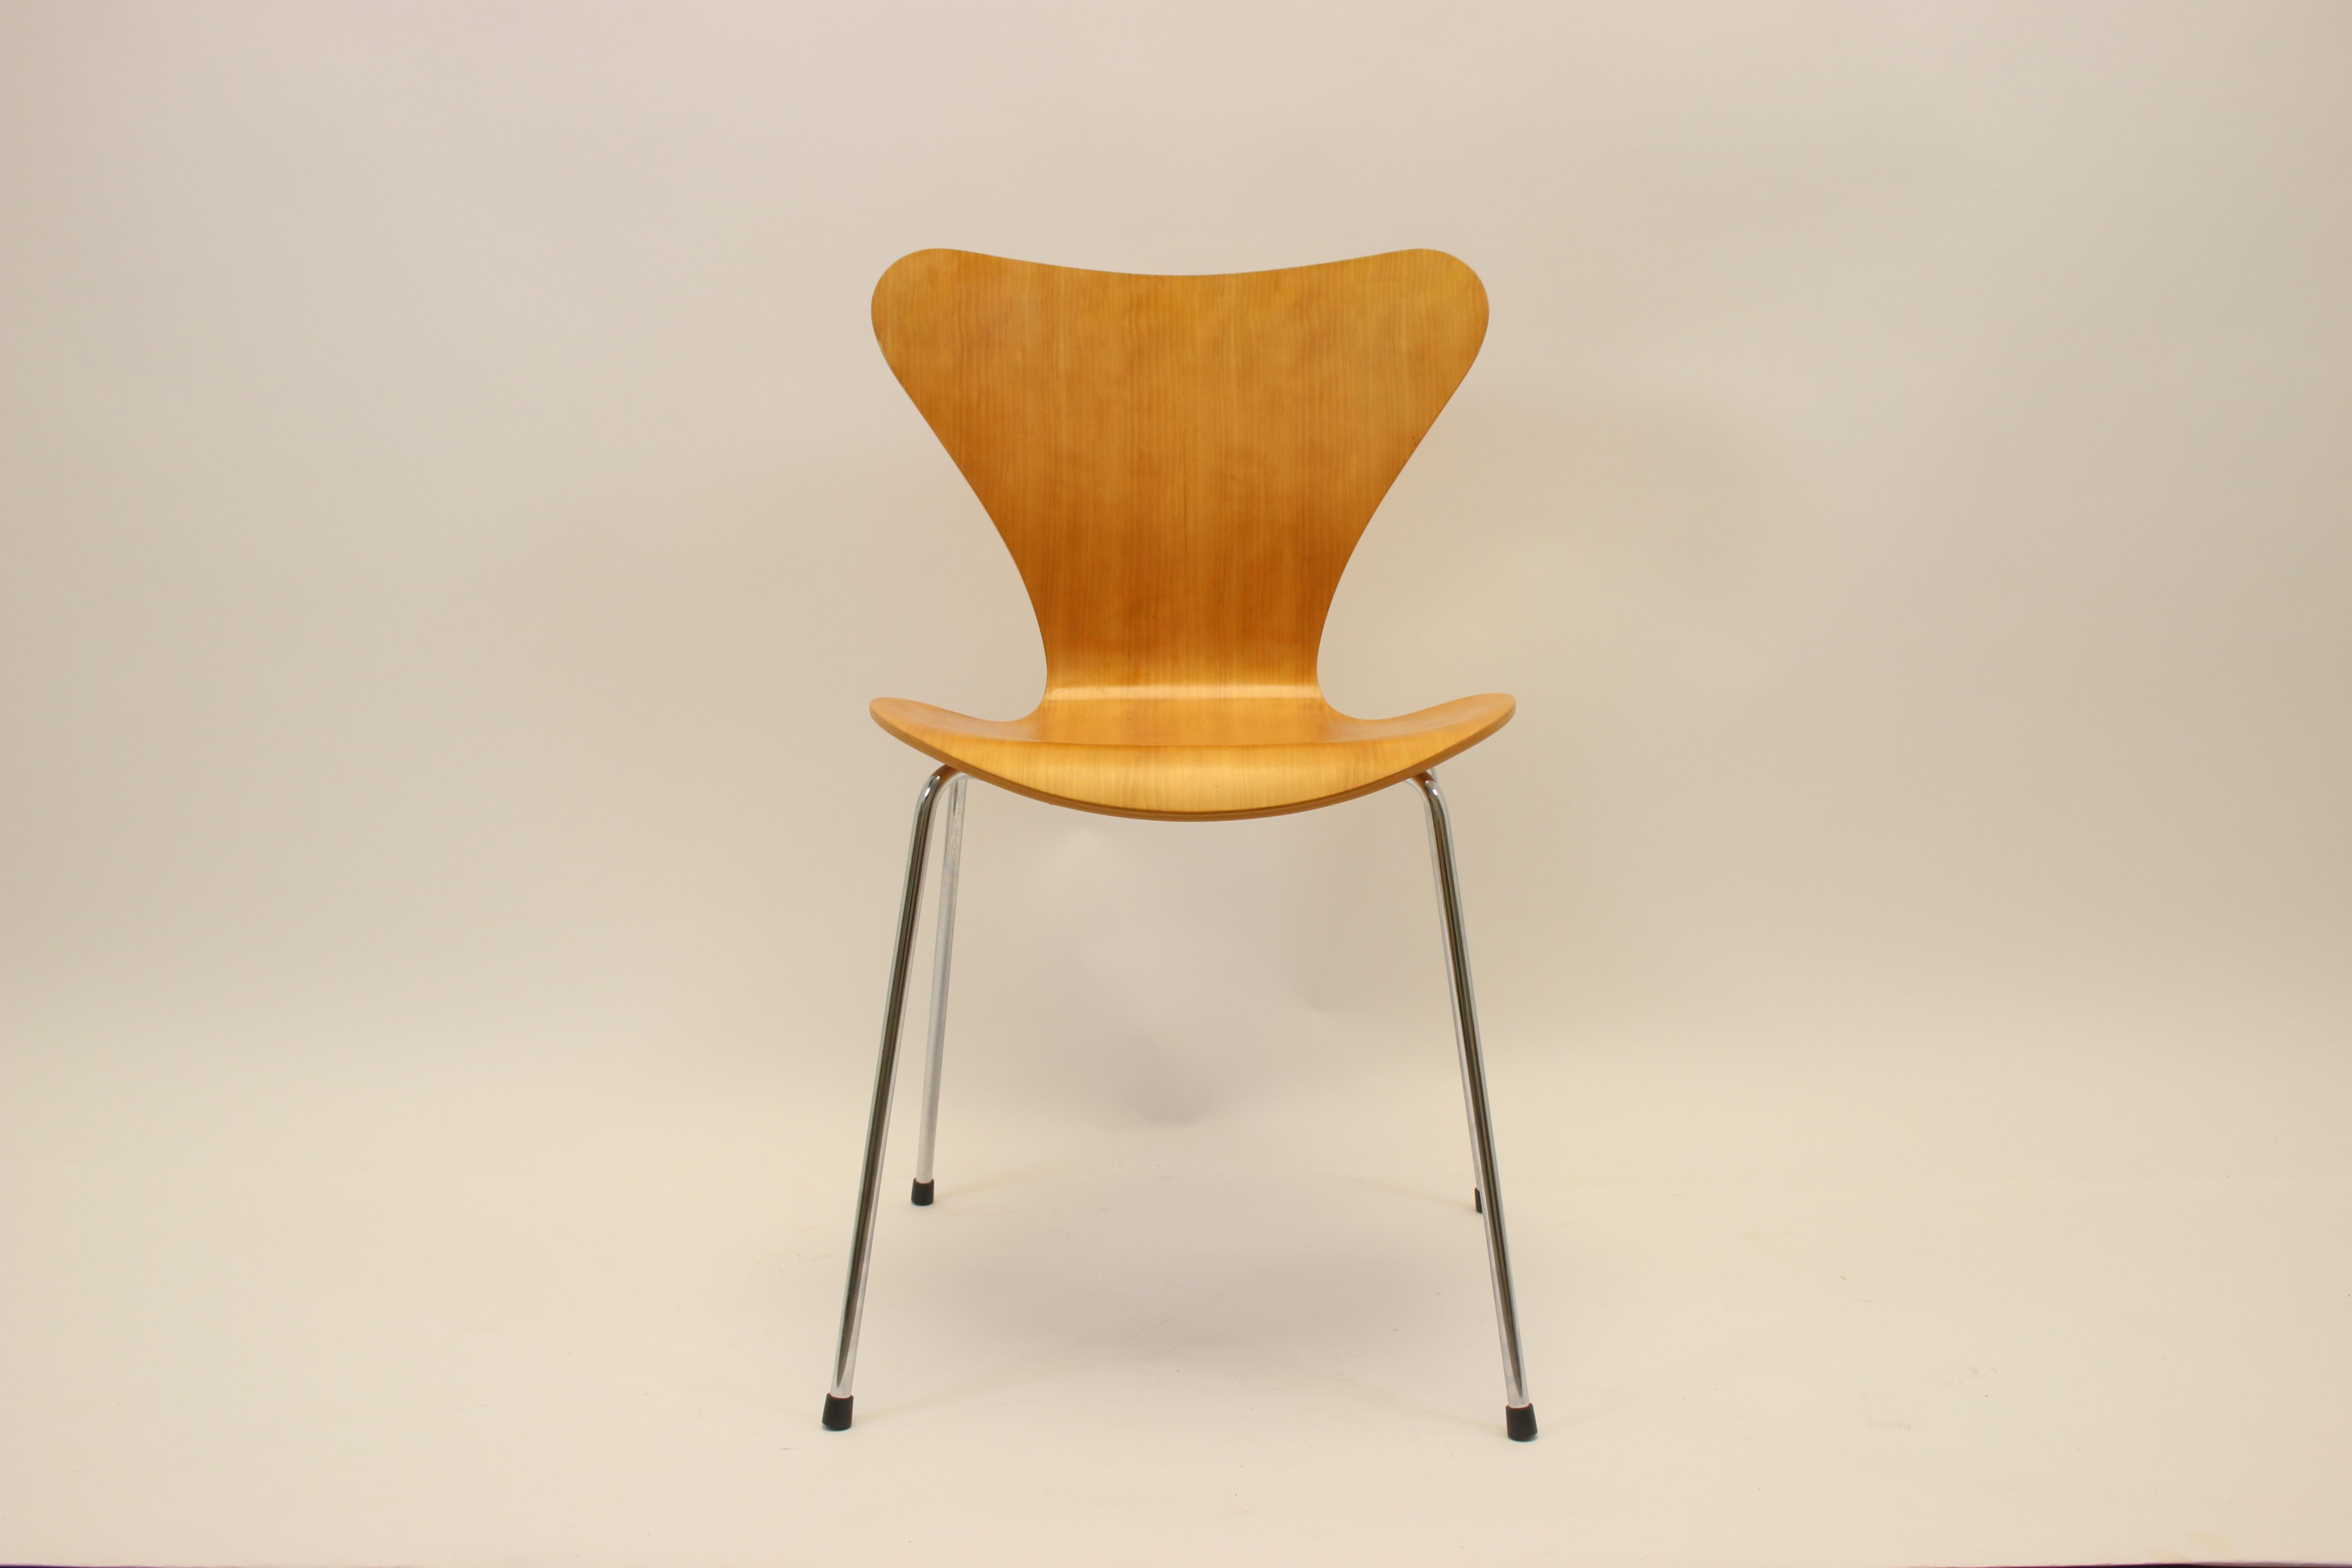 Le fauteuil papillon 3107 est une création d'Arne Jacobsen de 1953, également appelée 